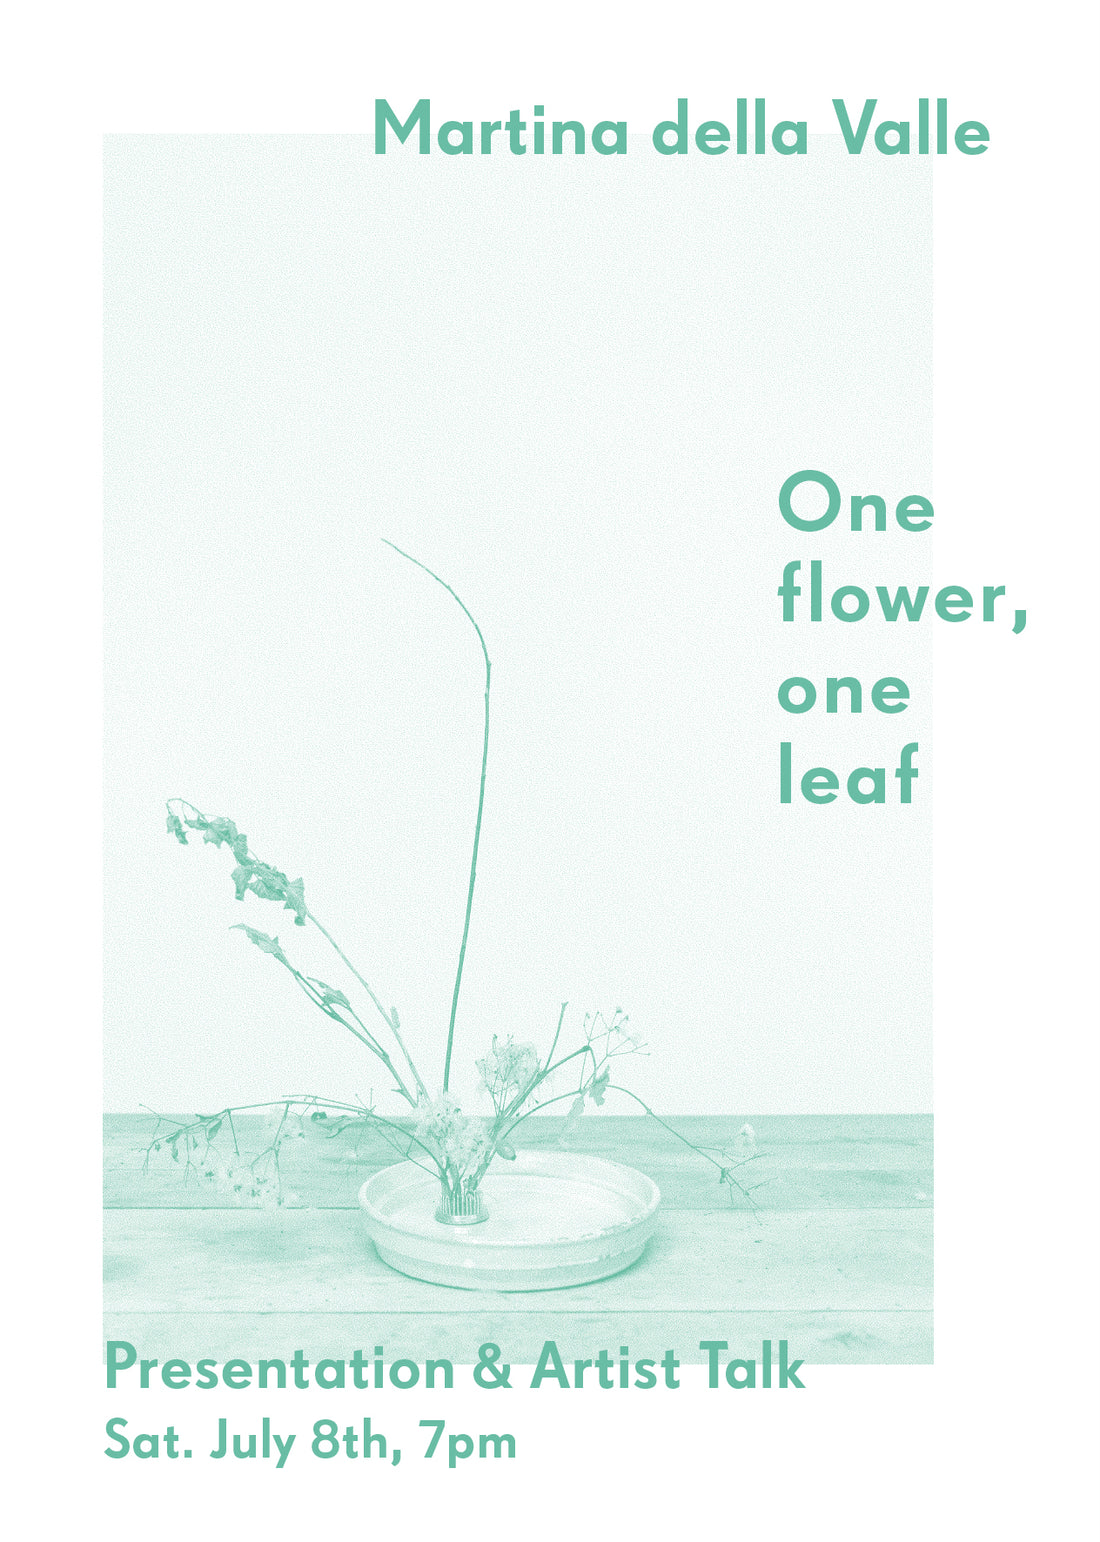 Presentation & Artist Talk - Martina della Valle "One flower, one leaf"